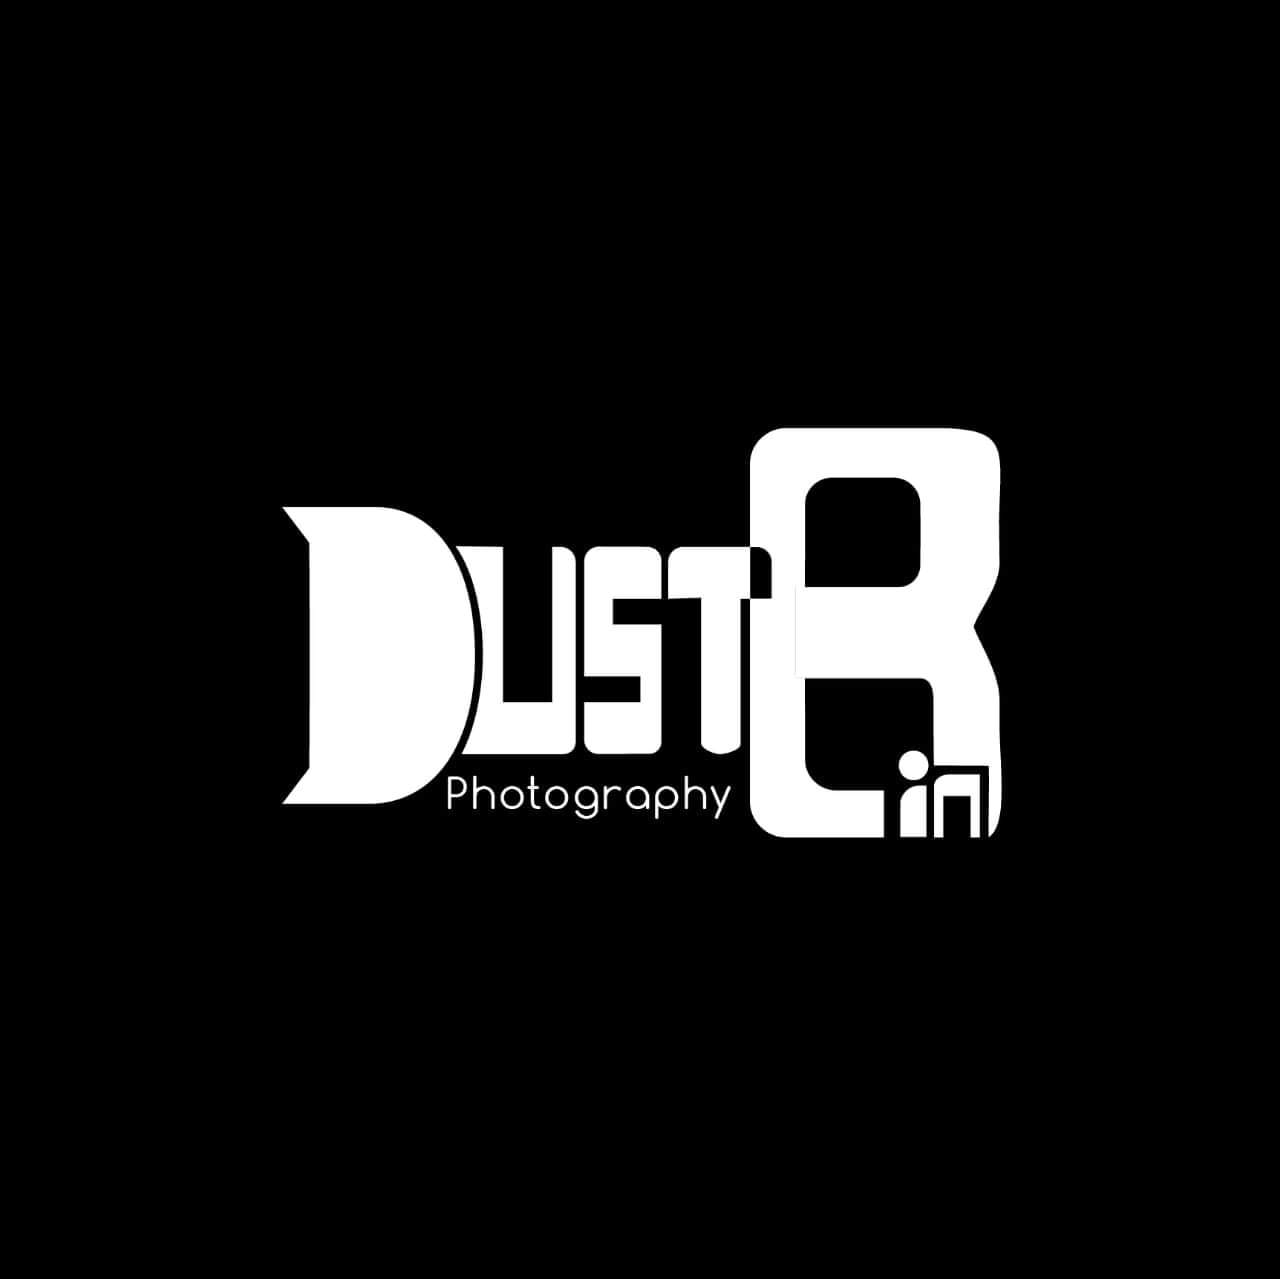 Dustbin Photography